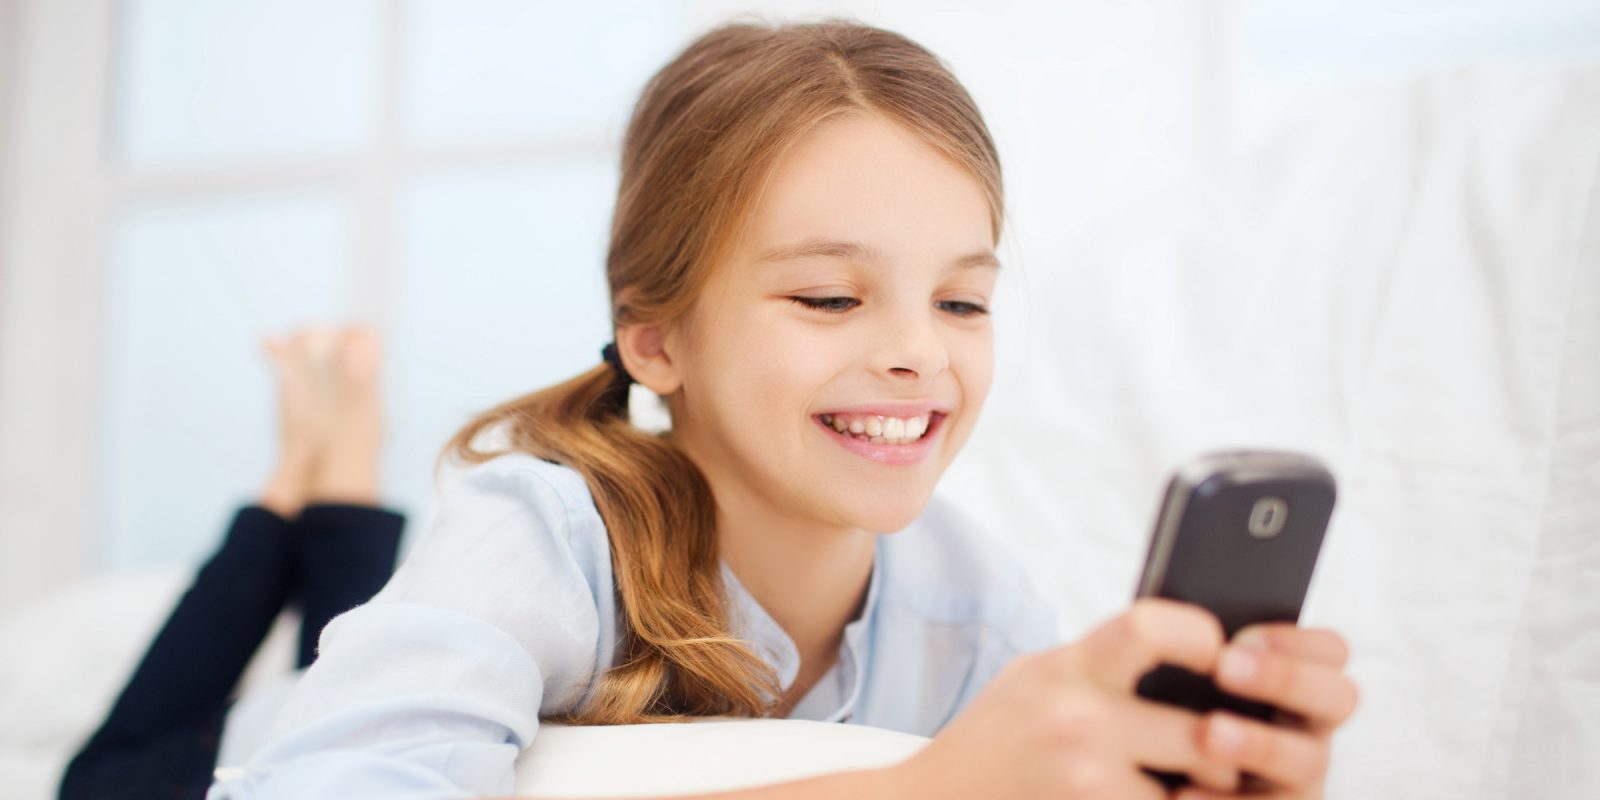 10 aplicaciones para controlar el uso del móvil en menores